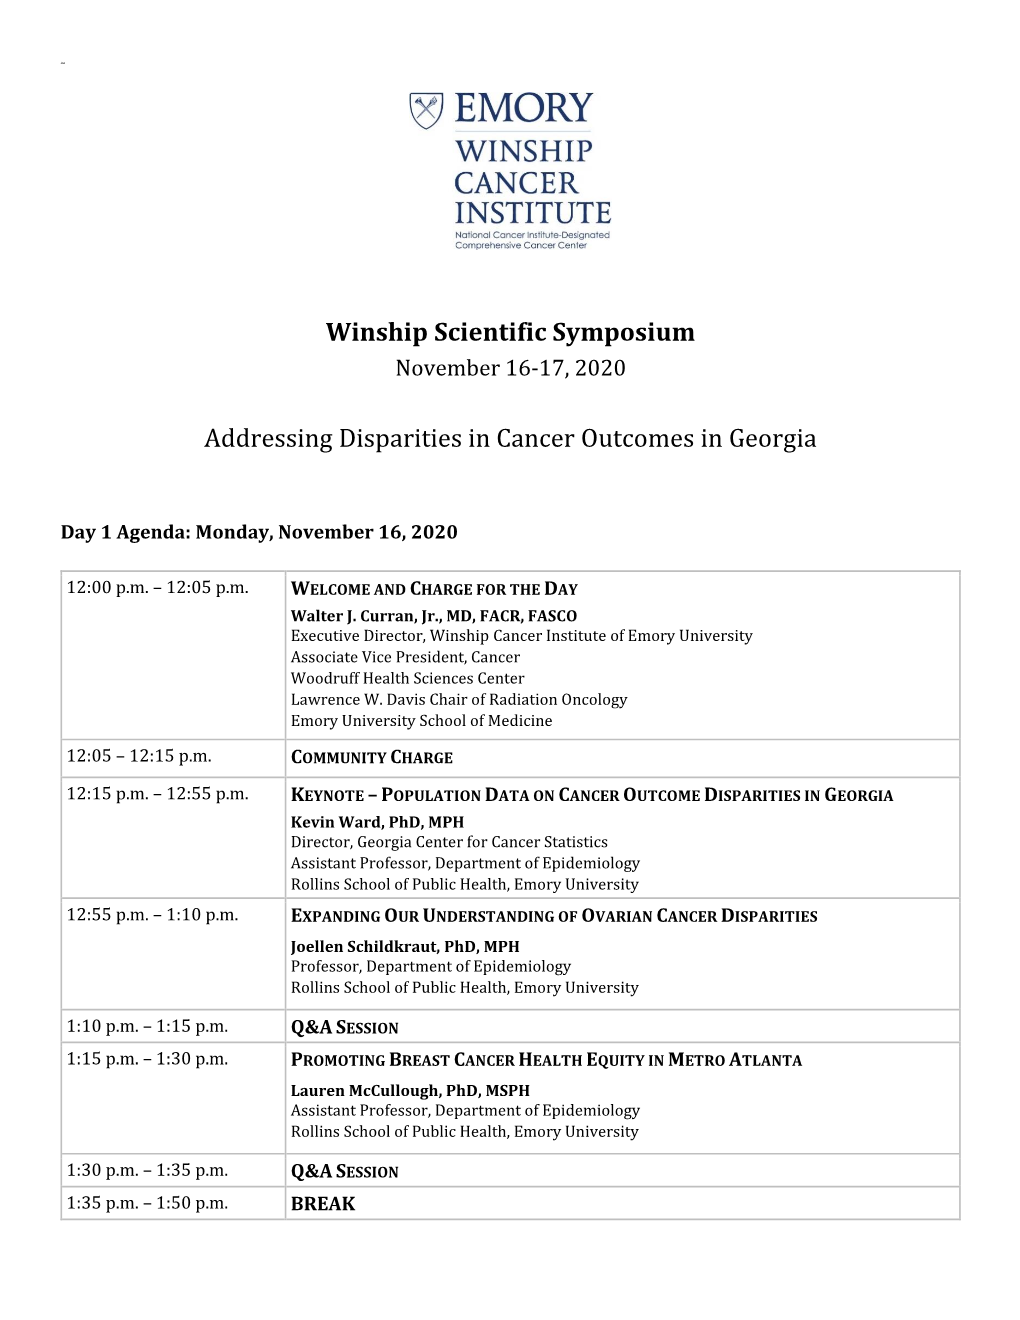 Winship Scientific Symposium Addressing Disparities in Cancer